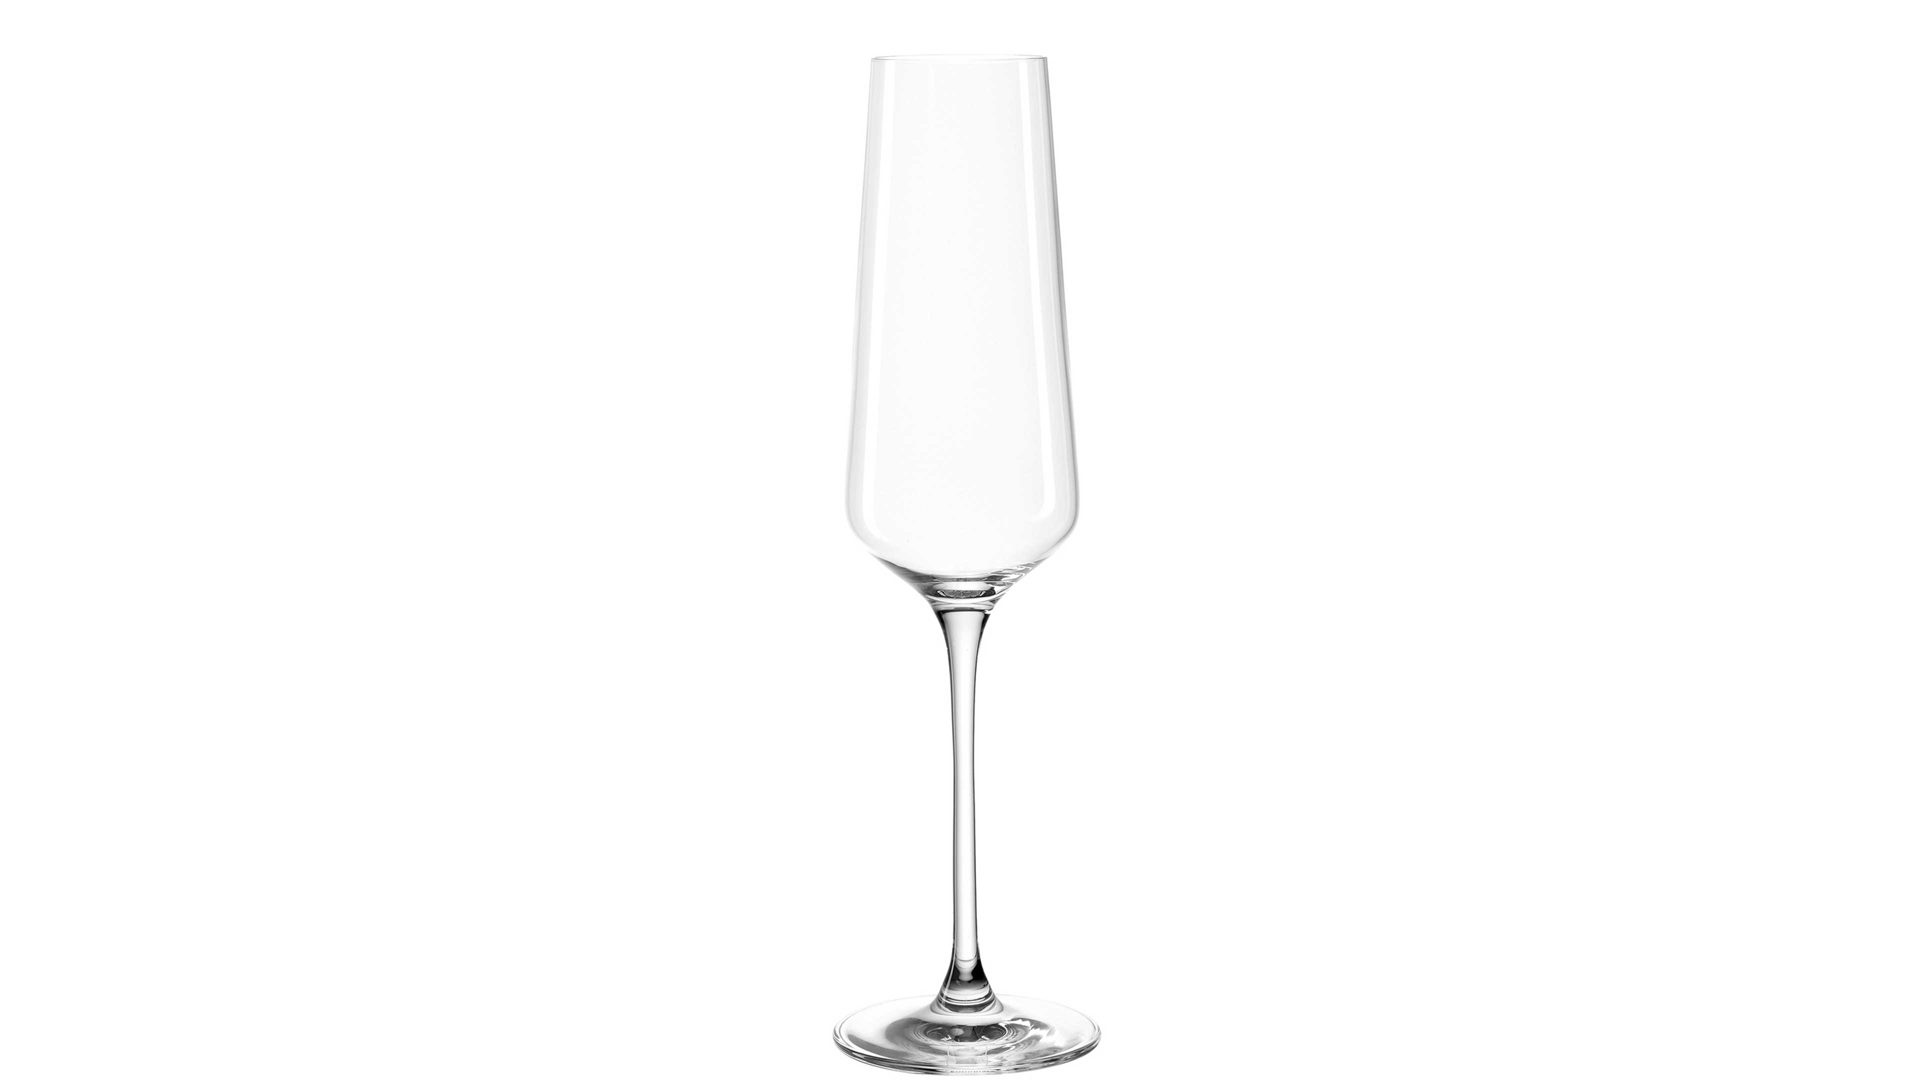 Sektglas Leonardo | glaskoch aus Glas in Transparent LEONARDO Sektglas Puccini TEQTON®-Kristallglas – Fassungvermögen ca. 280 ml